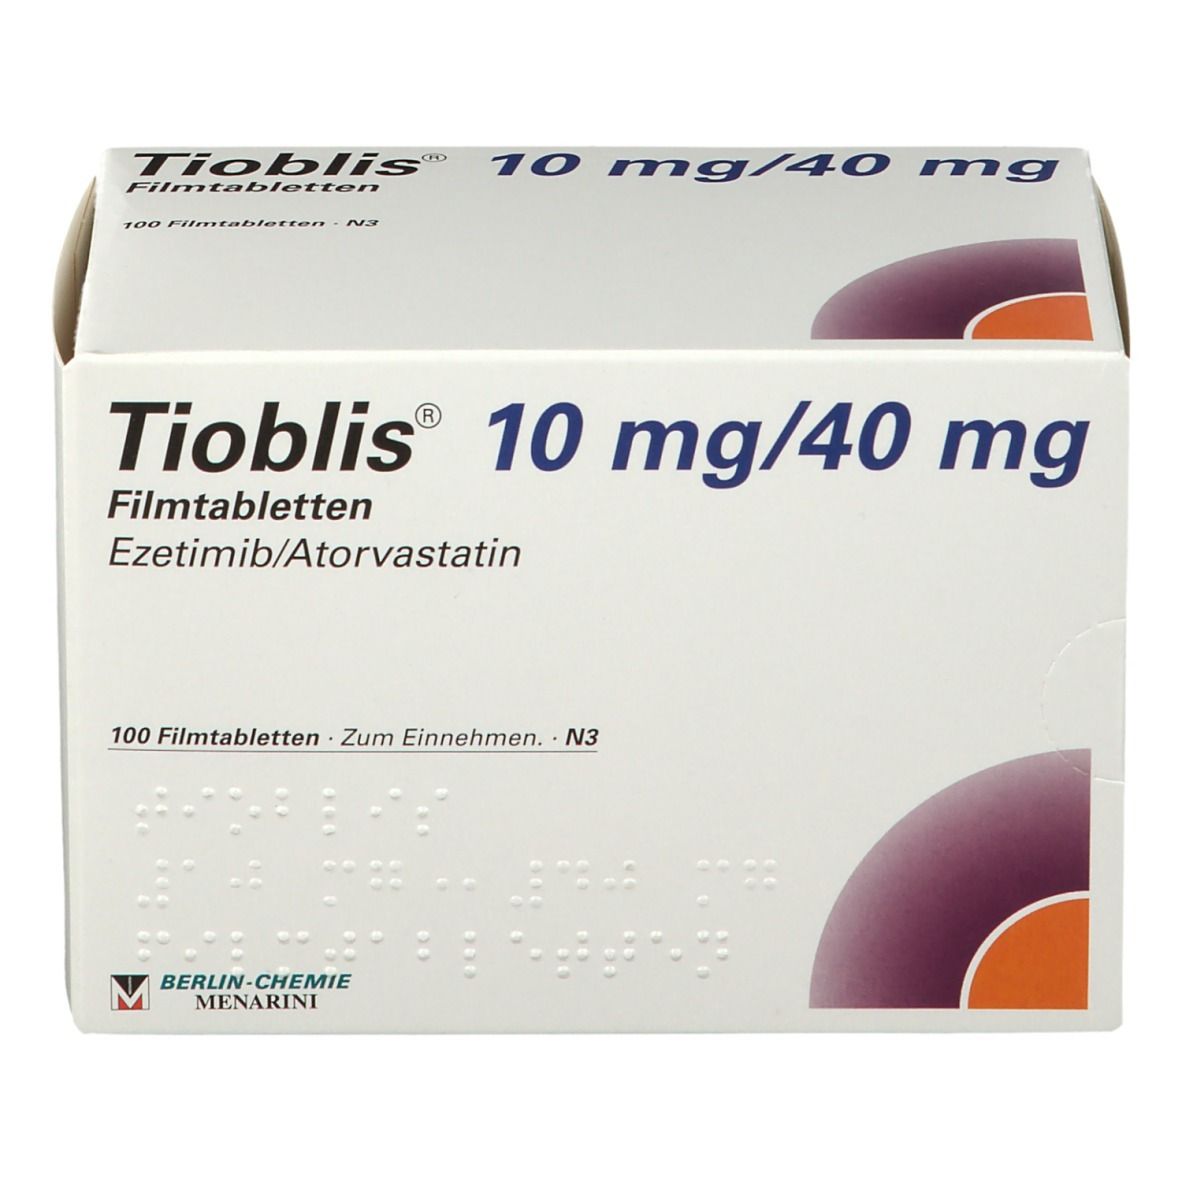 Tioblis® 10 mg/40 mg